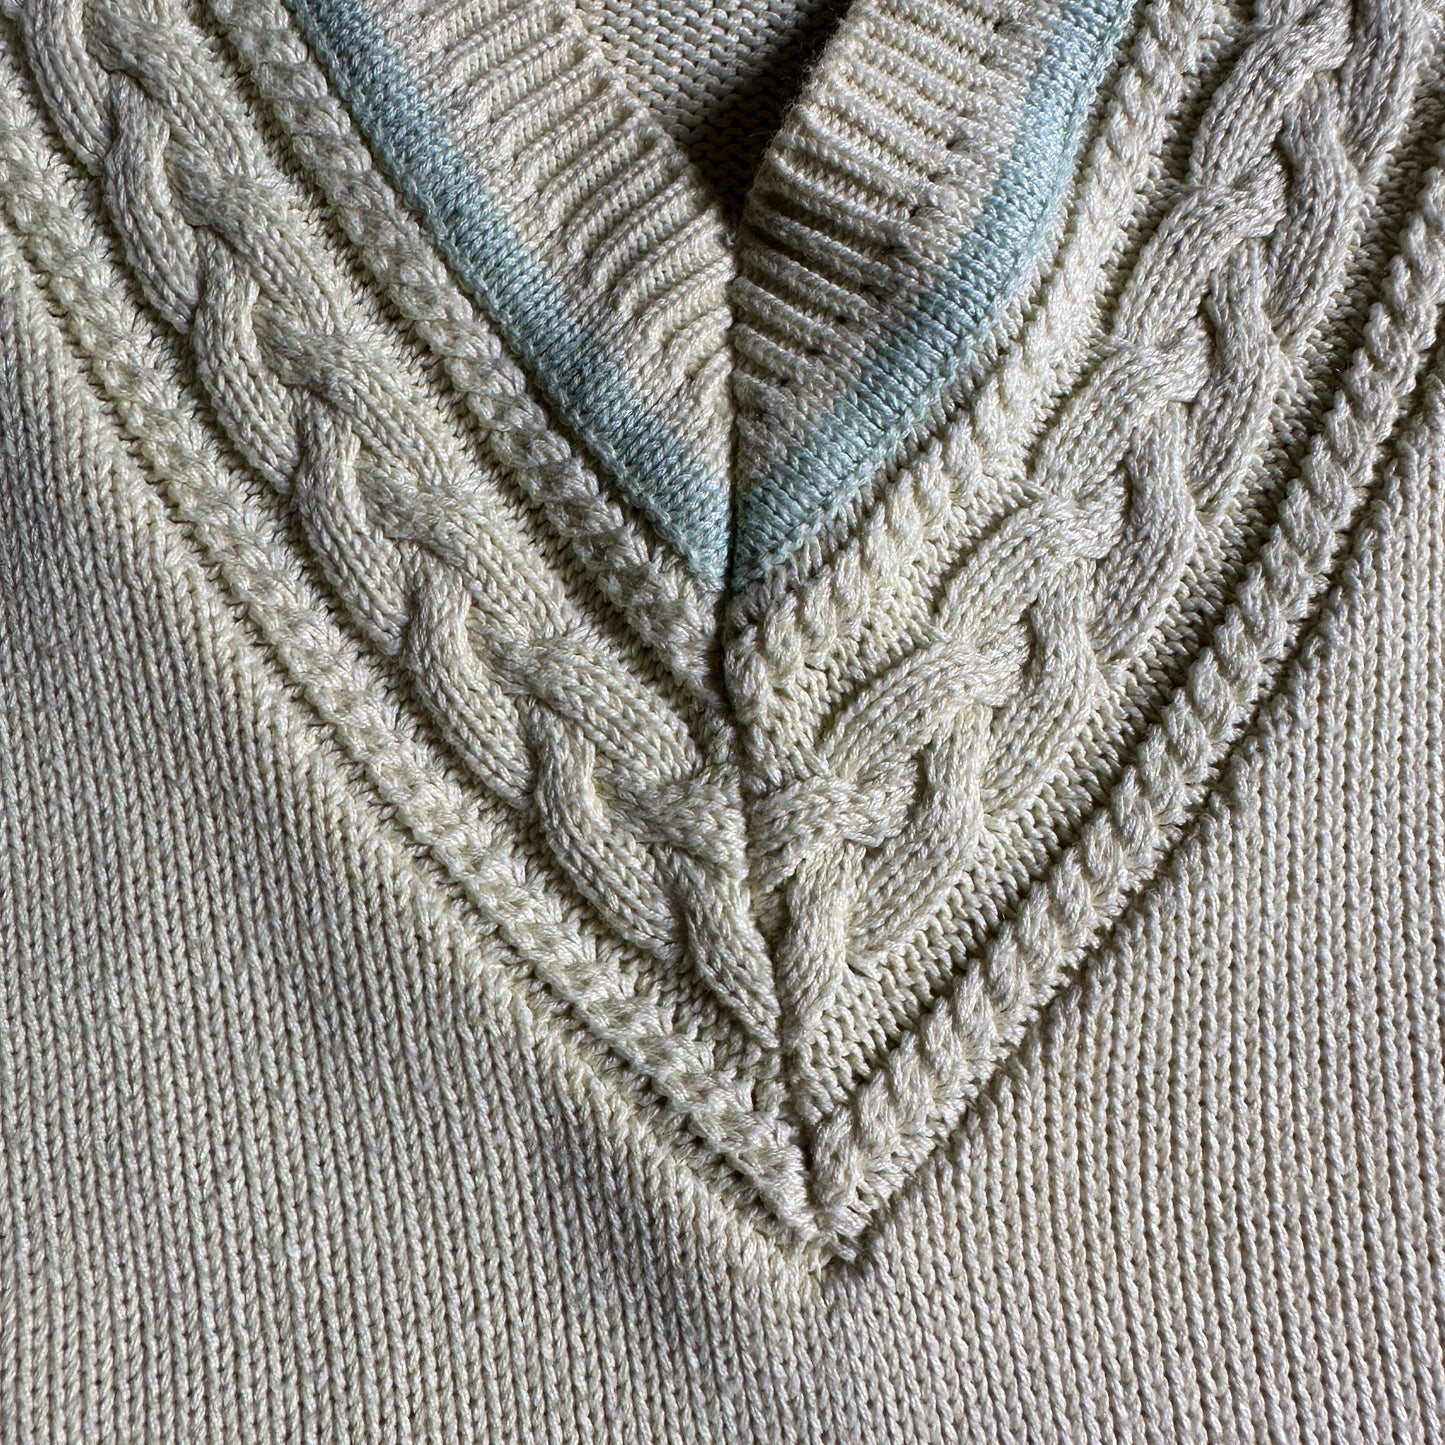 Maglione vintage cotone